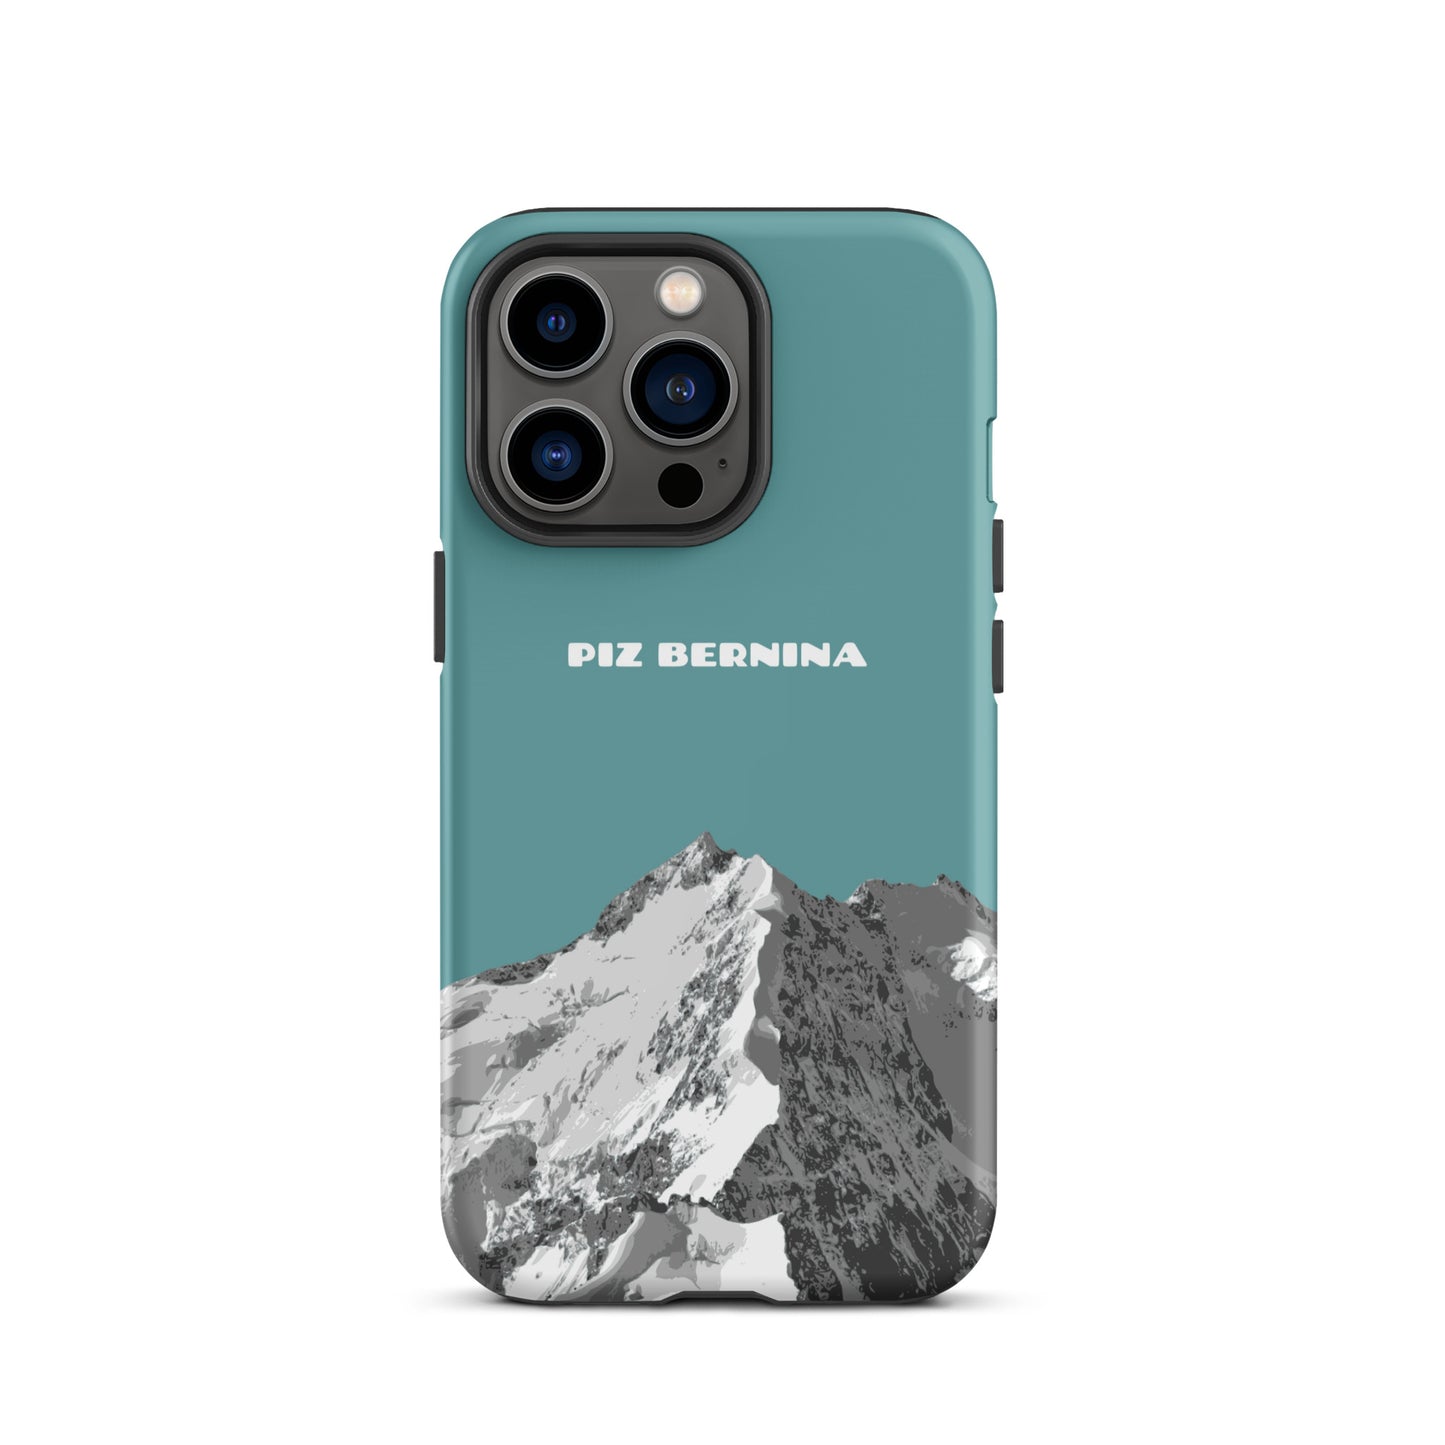 Hülle für das iPhone 13 Pro von Apple in der Farbe Kadettenblau, dass den Piz Bernina in Graubünden zeigt.